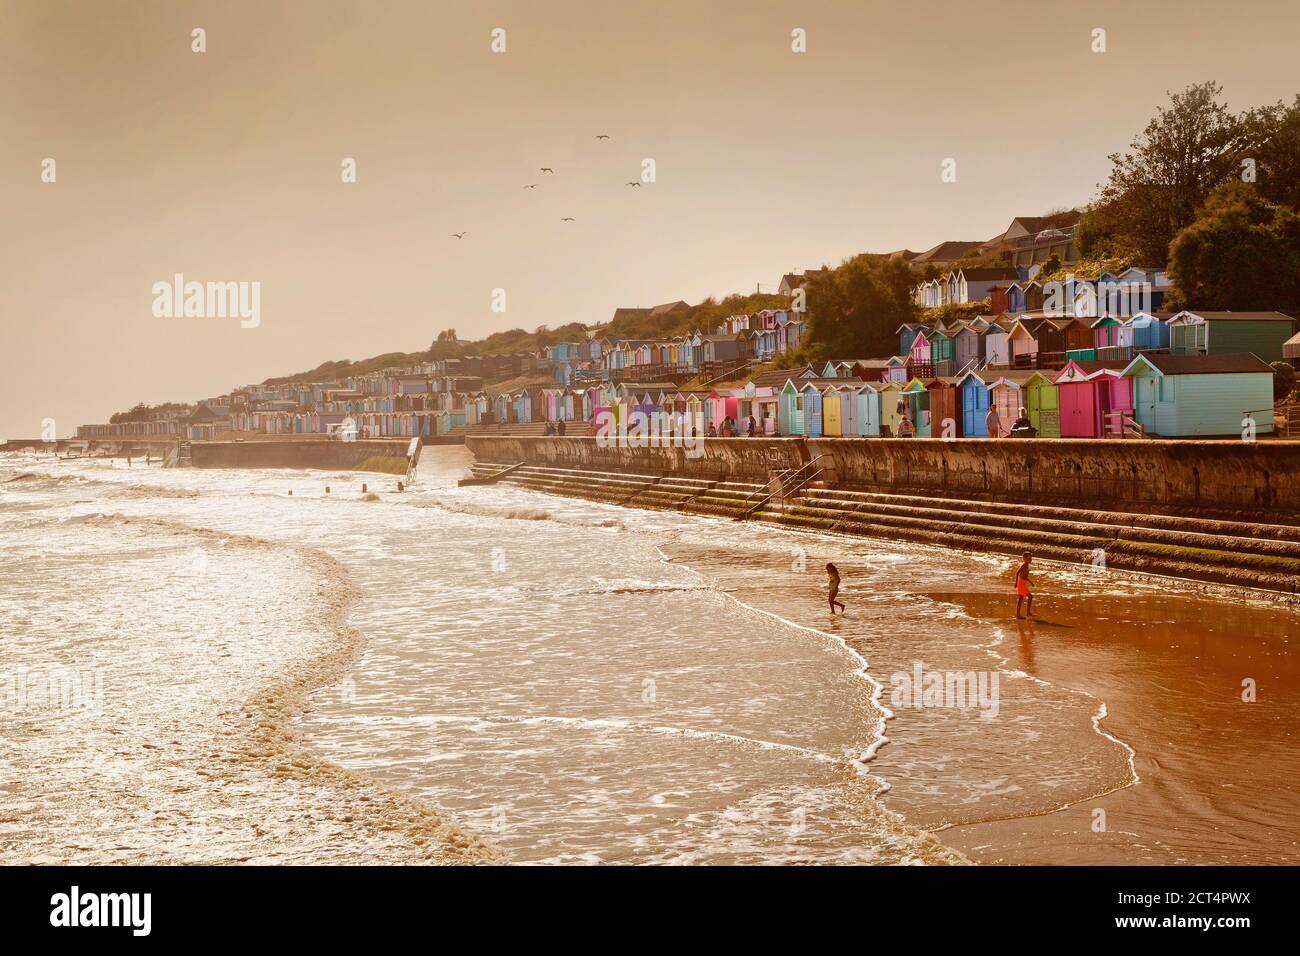 Walton-on-the-Naze, front de mer, Essex, Royaume-Uni. Des cabanes de plage colorées bordent la digue, lumière chaude le soir, plage avec deux enfants Banque D'Images